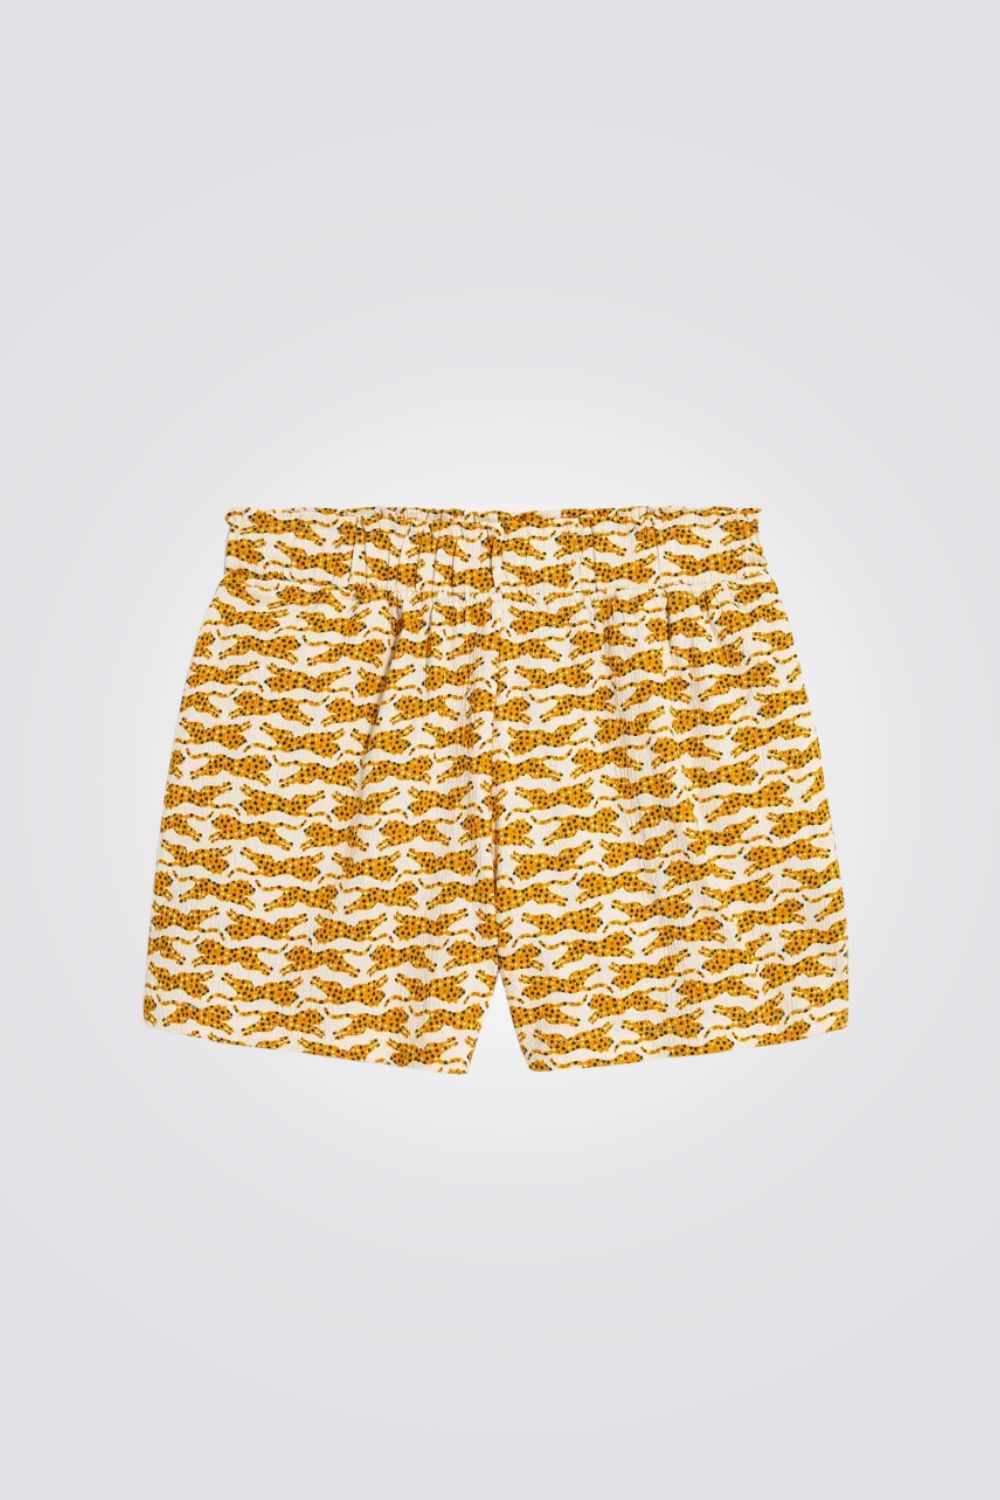 מכנסיים קצרים ילדות עם הדפס נמרים בצבע צהוב